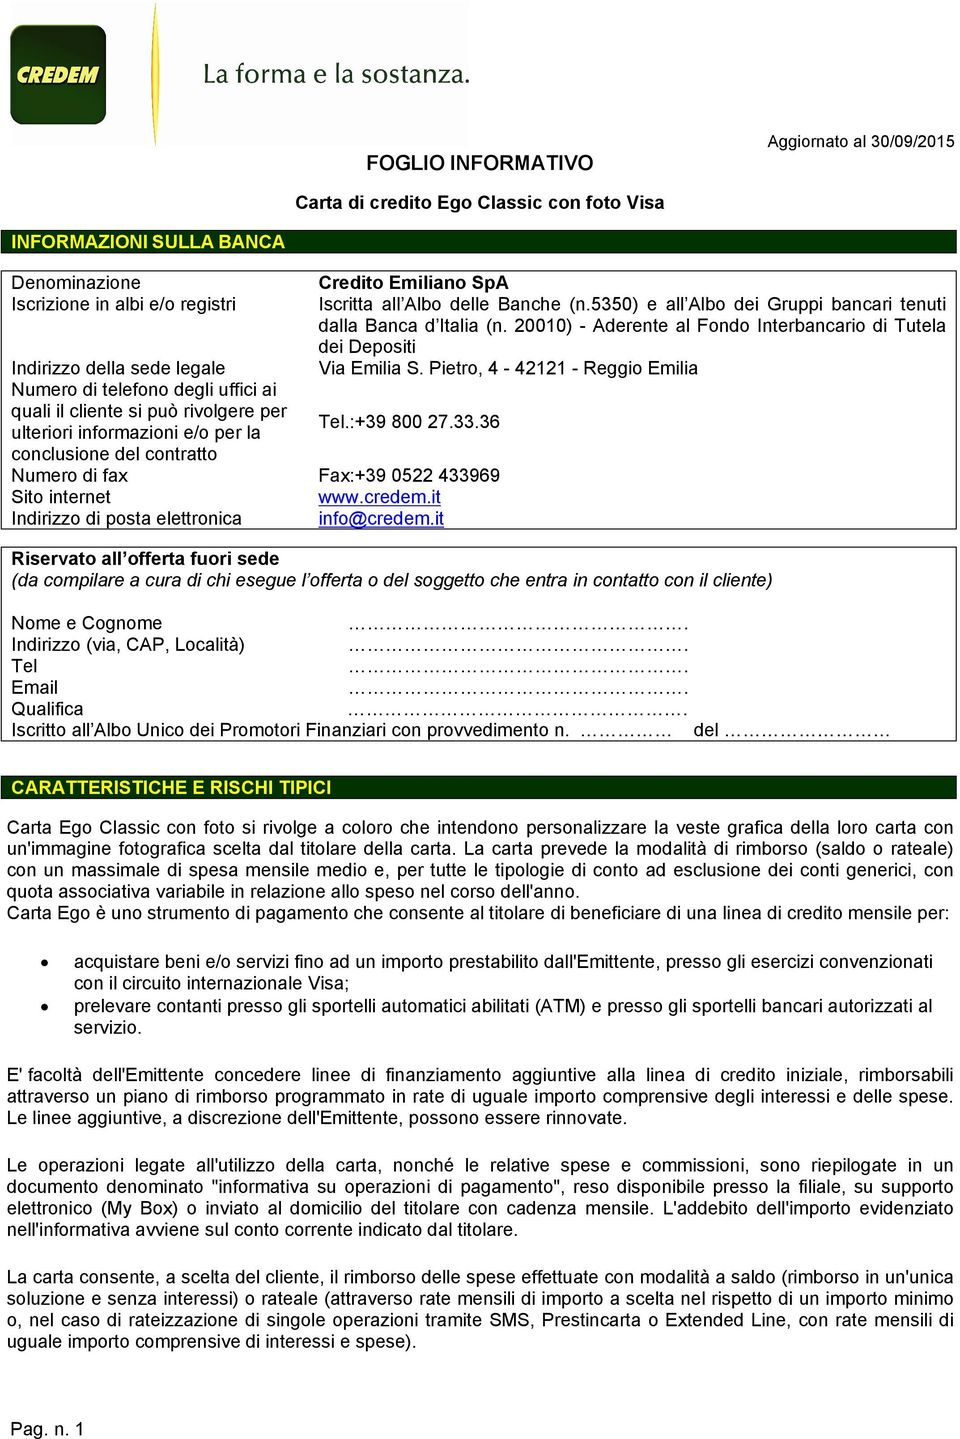 Pietro, 4-42121 - Reggio Emilia Numero di telefono degli uffici ai quali il cliente si può rivolgere per ulteriori informazioni e/o per la Tel.:+39 800 27.33.